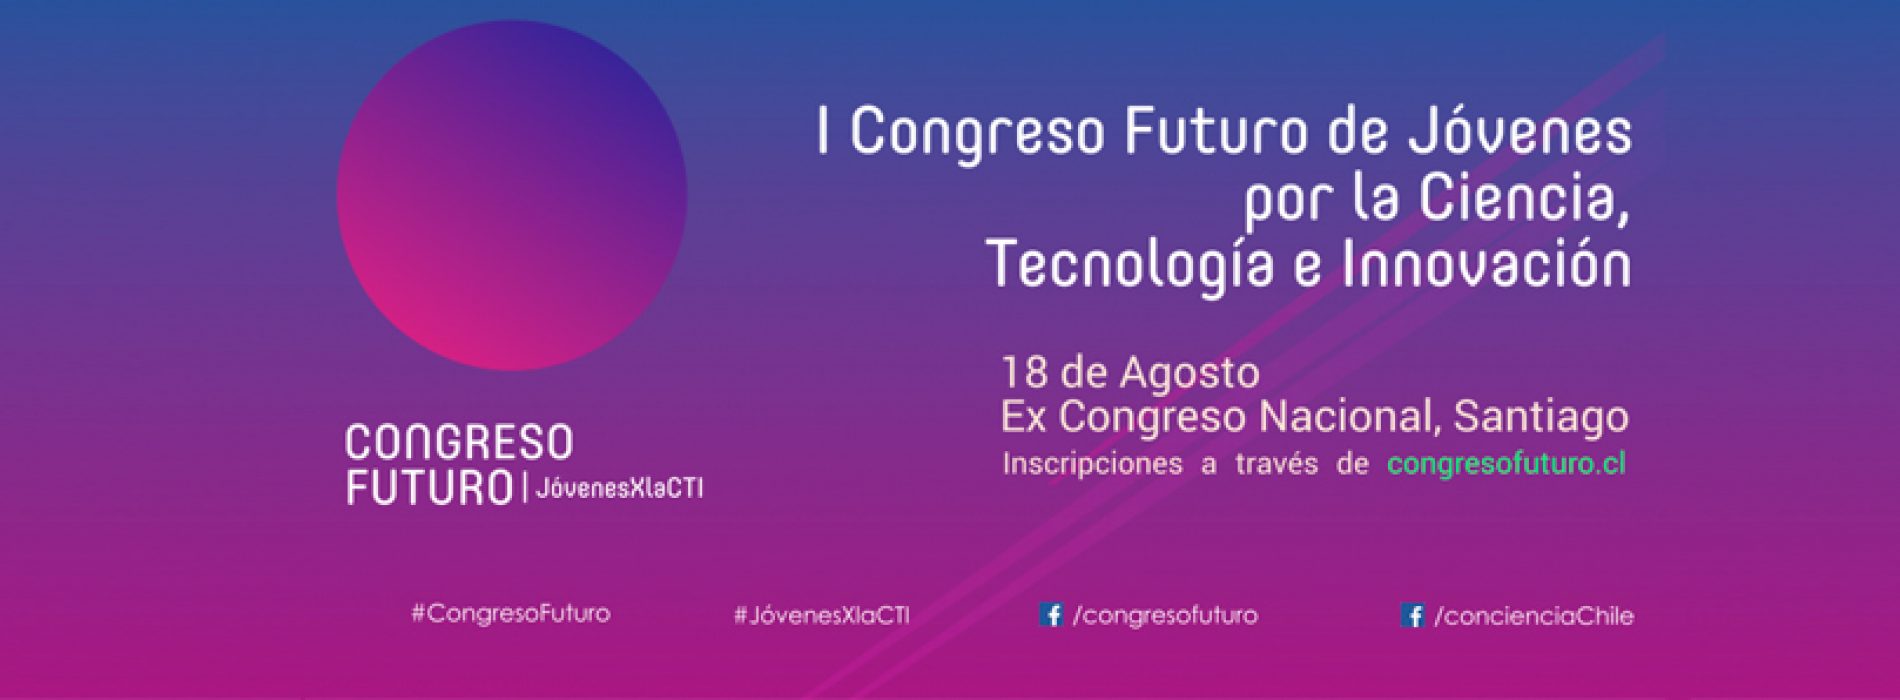 I Congreso Futuro de Jóvenes por la Ciencia, Tecnología e Innovación